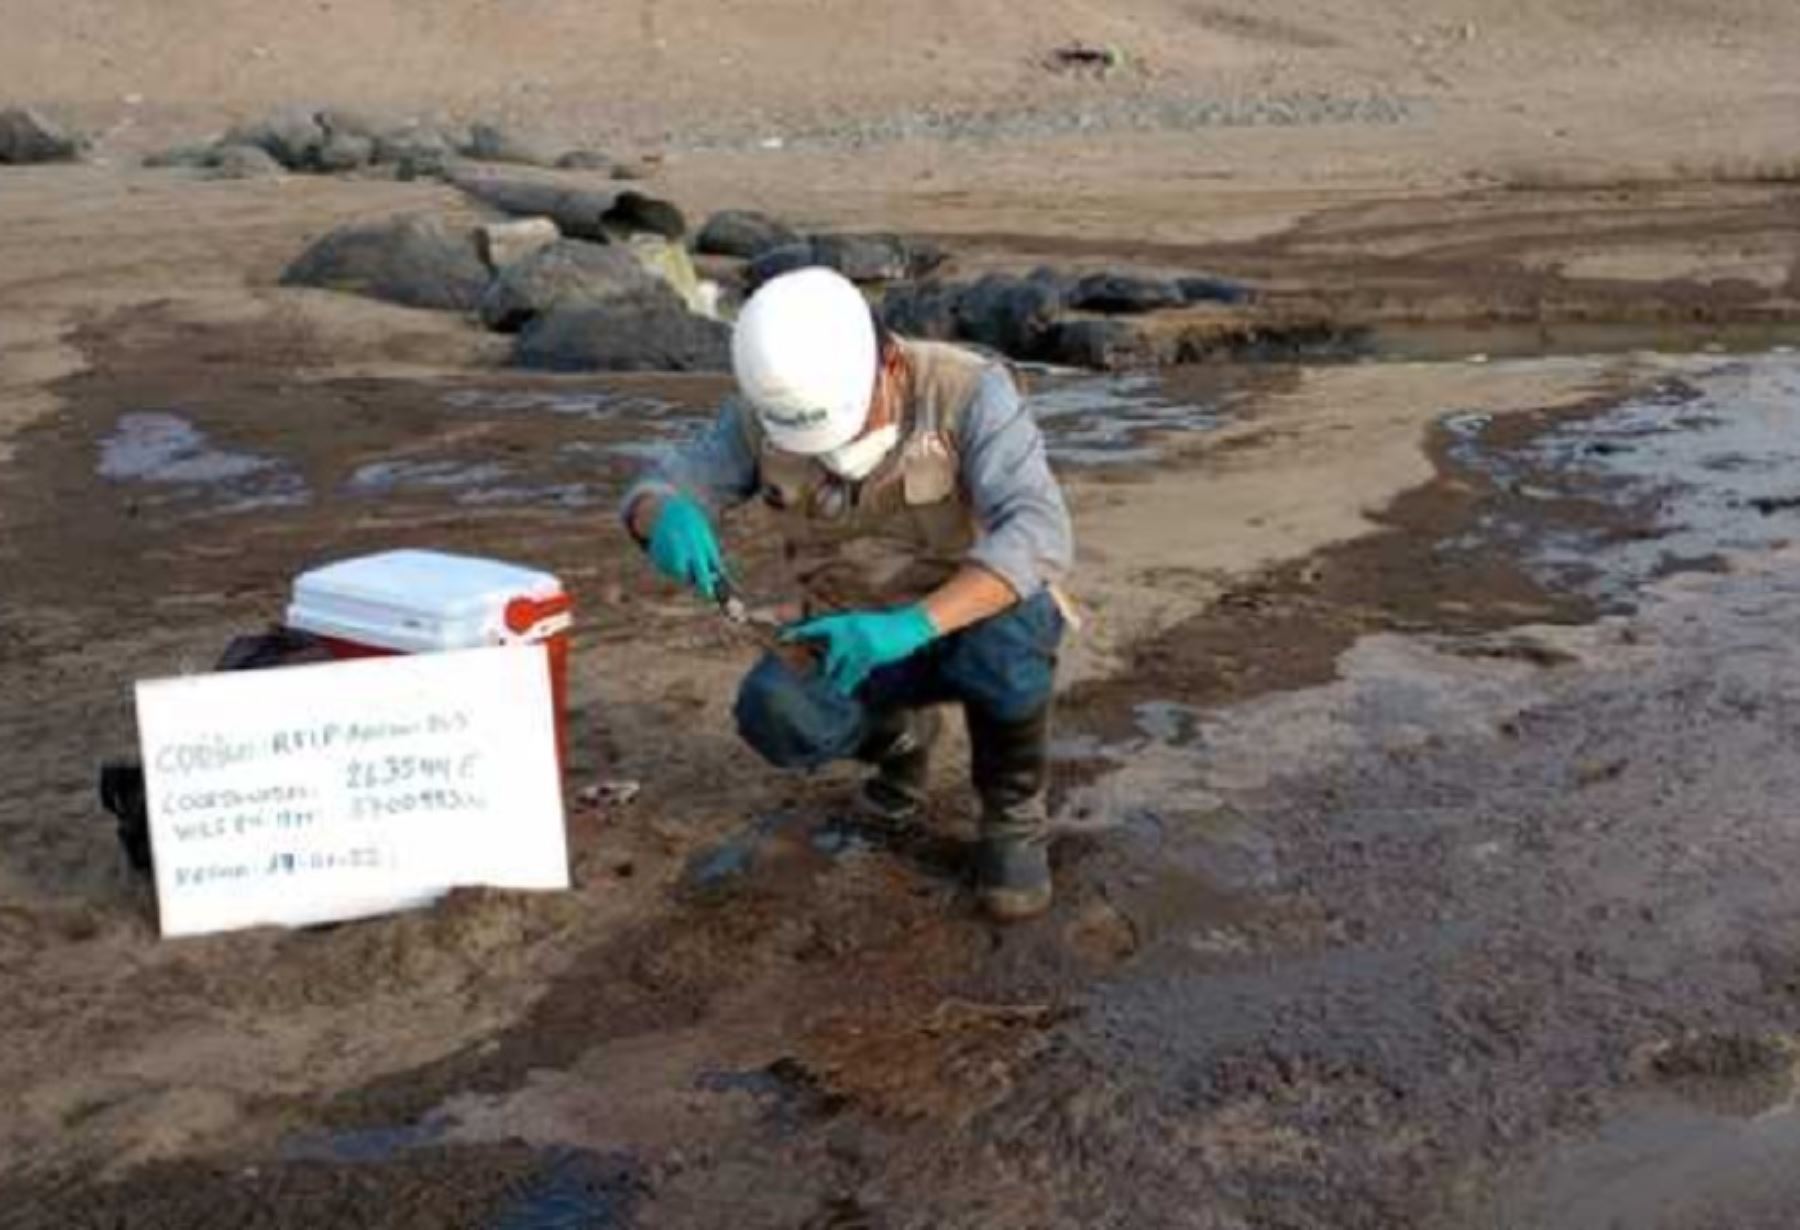 Las playas de la provincia de Huaura no evidencian hasta ahora presencia del petróleo derramado la semana pasada en el muelle de la refinería La Pampilla, aunque se han tomado muestras de agua y suelo para confirmar dicha situación, informó hoy el Organismo de Evaluación y Fiscalización Ambiental